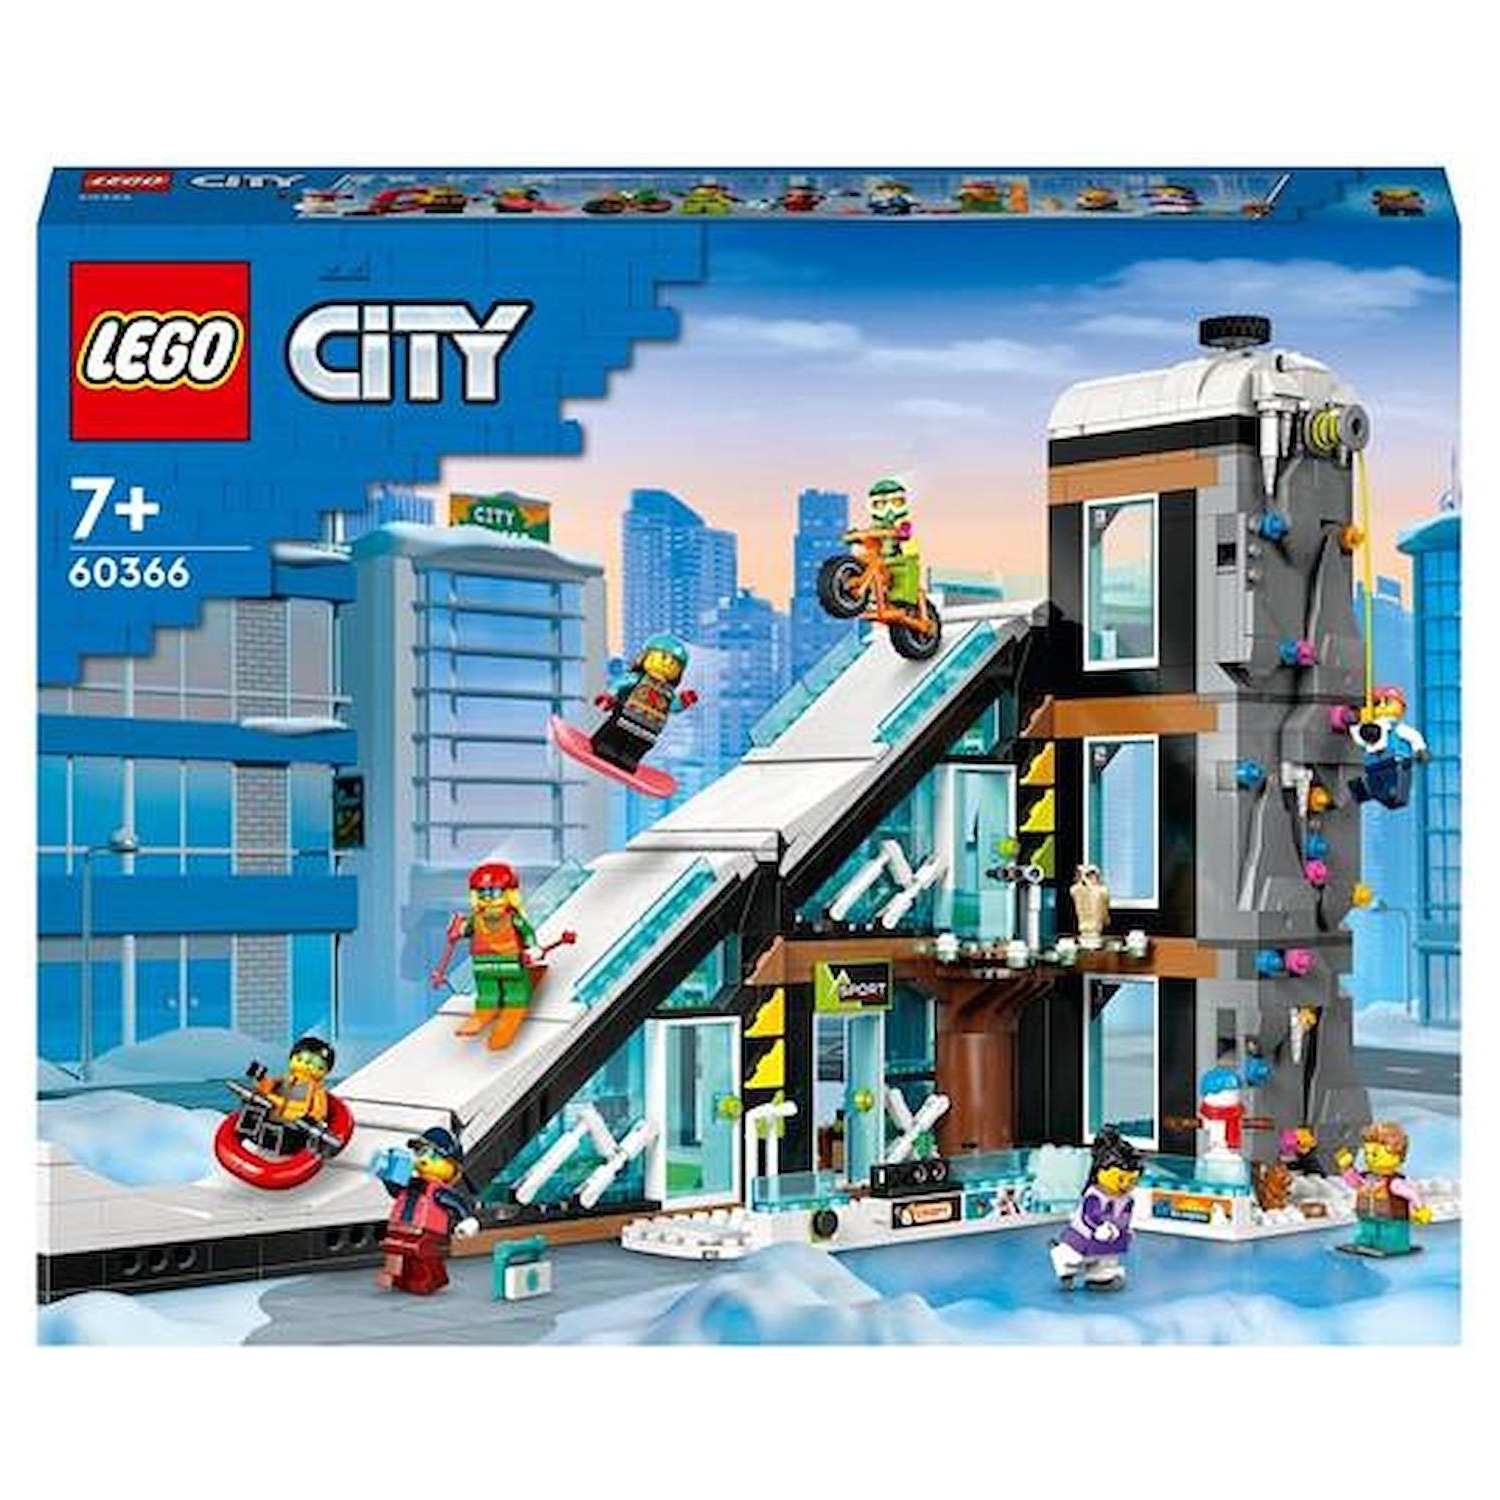 Immagine per Lego City Centro sci e arrampicata da DIMOStore